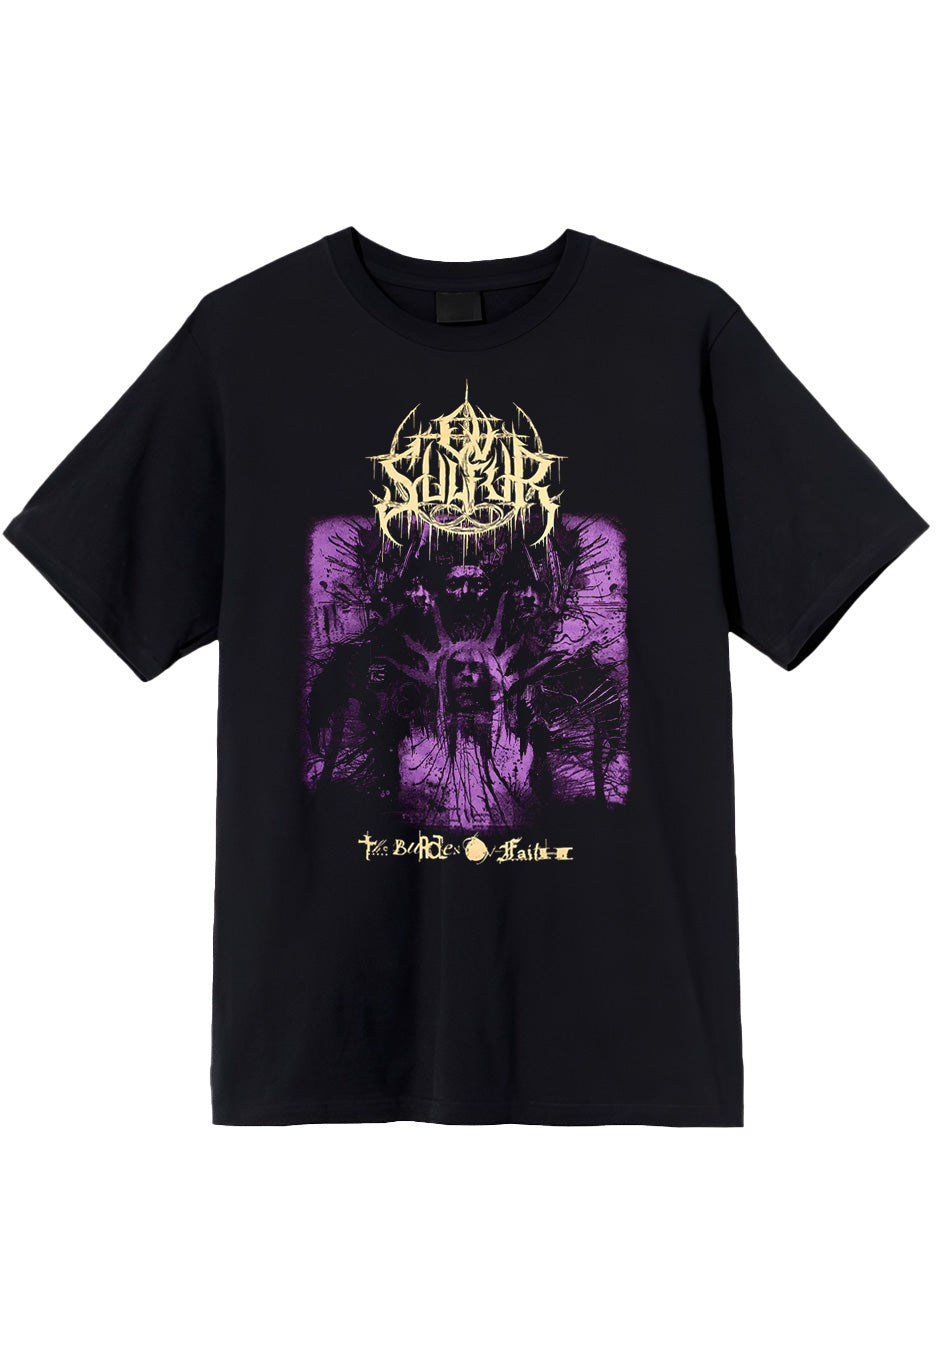 Ov Sulfur - The Burden Of Faith - T-Shirt | Neutral-Image